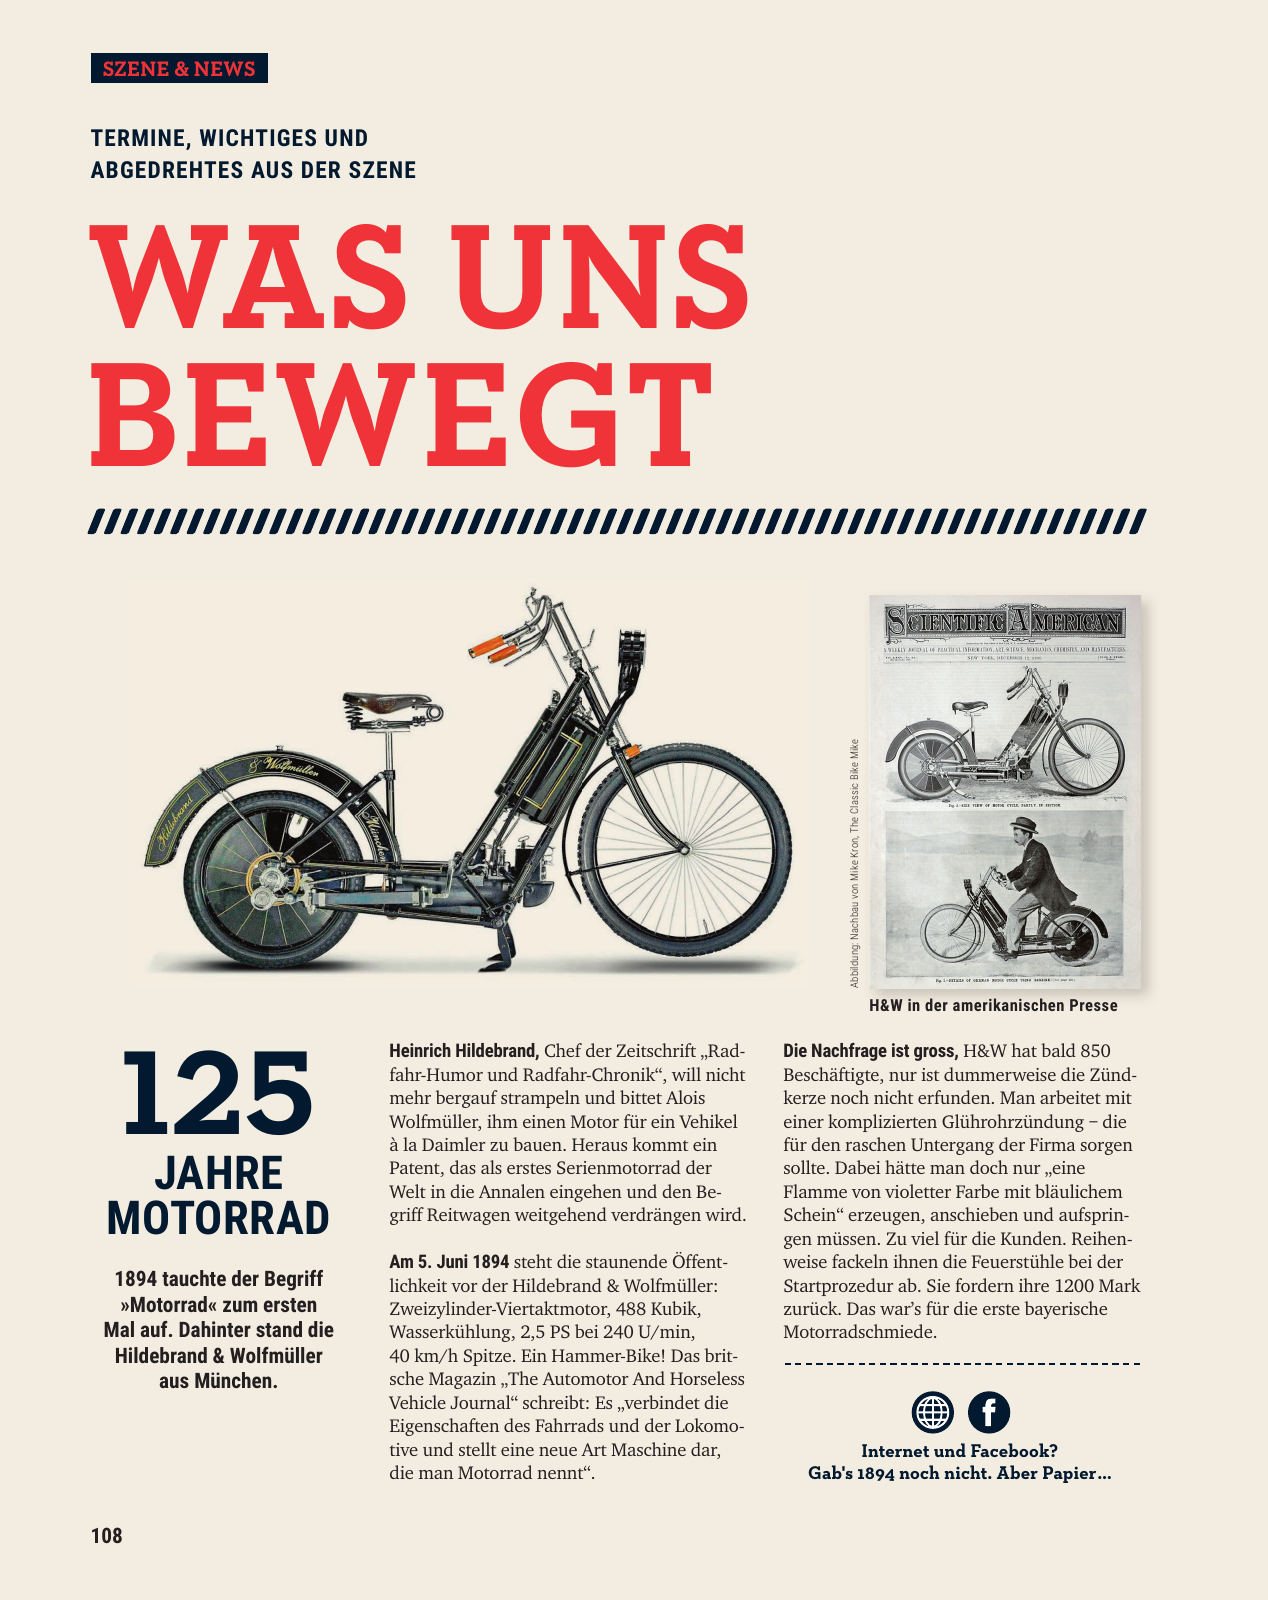 Vorschau polo-motorrad-mach-dein-ding-ch-de-Q6N3ypgVk4 Seite 108